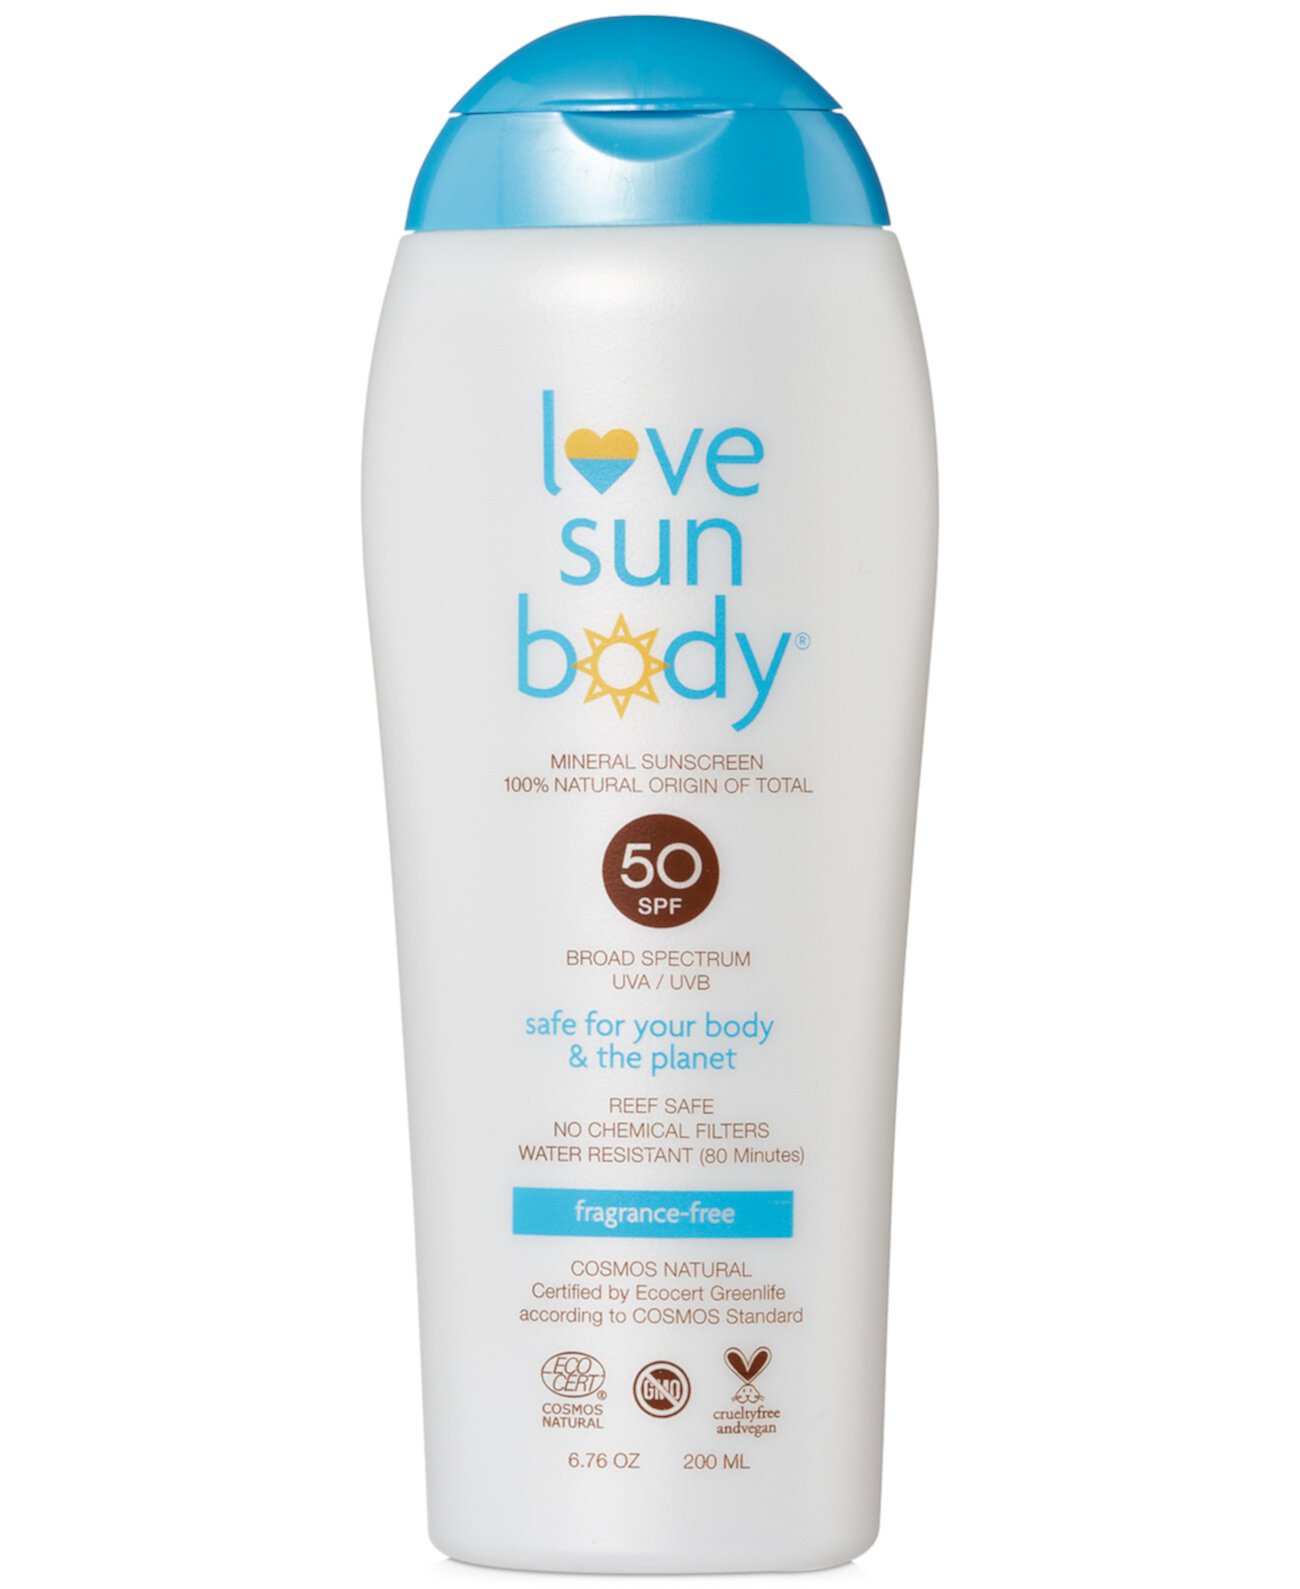 Солнцезащитный крем SPF 50 100% натурального происхождения - без запаха, 6,76 унций. Love Sun Body